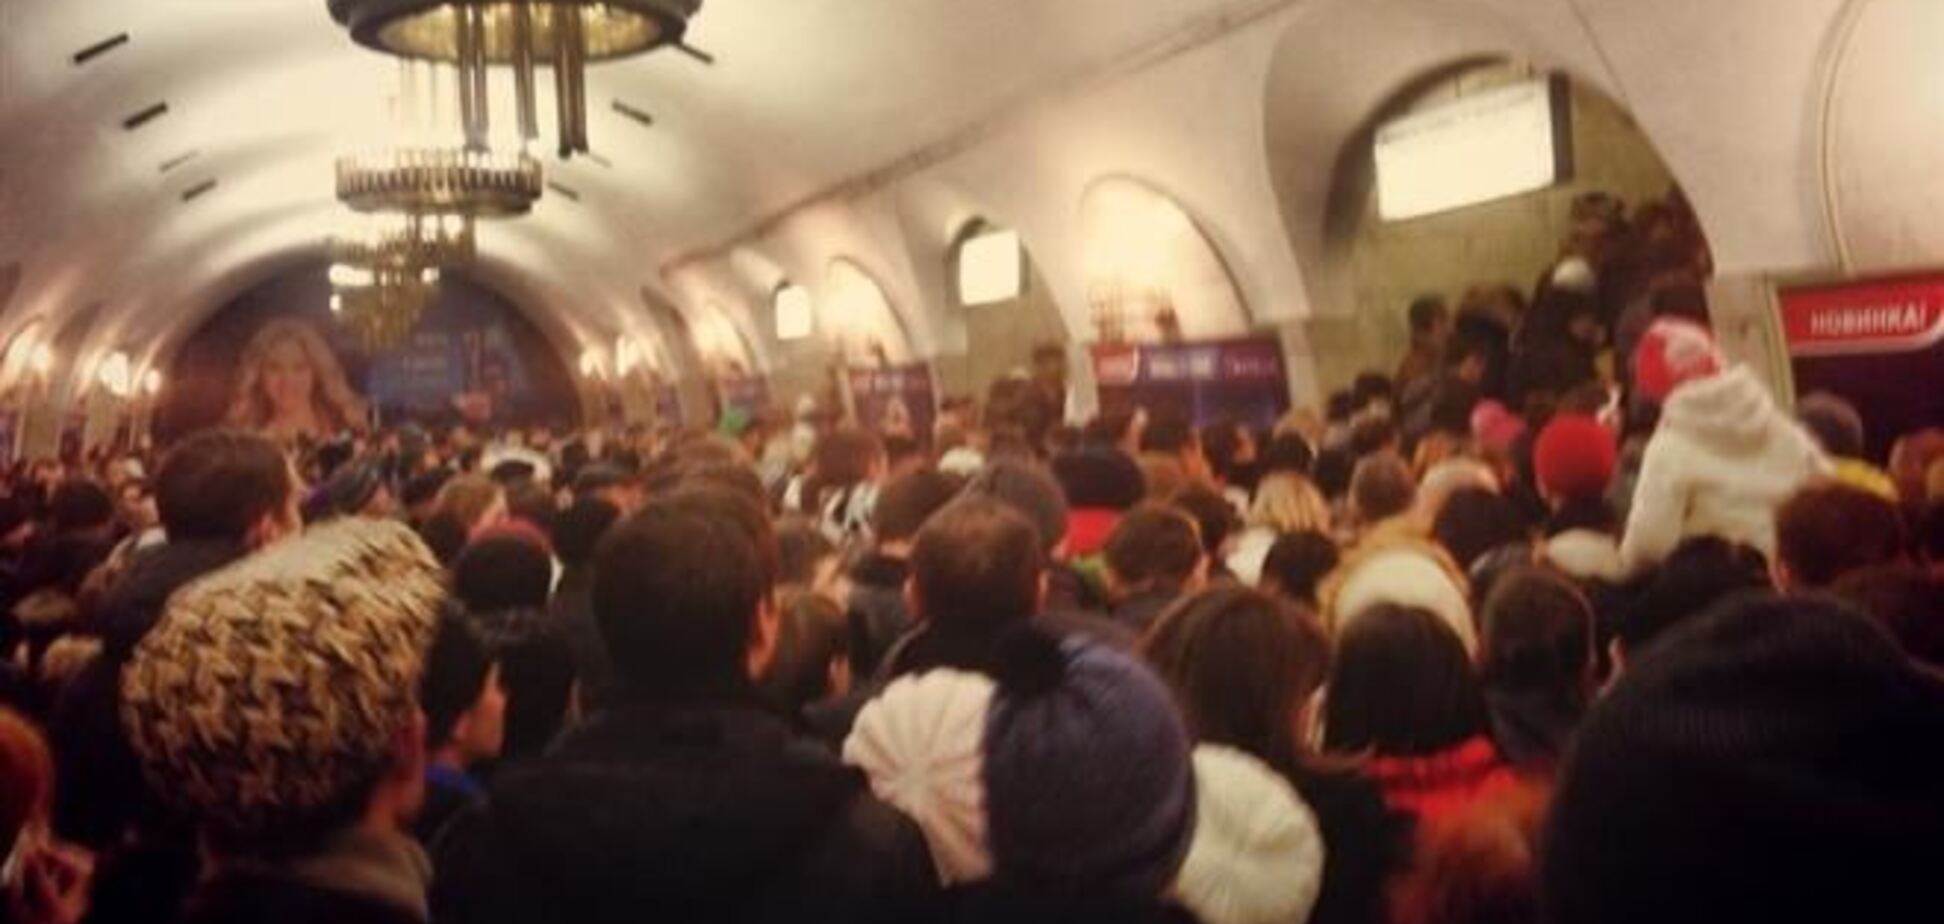 Станції метро 'Майдан Незалежності' і 'Печерська' закрили - ЗМІ